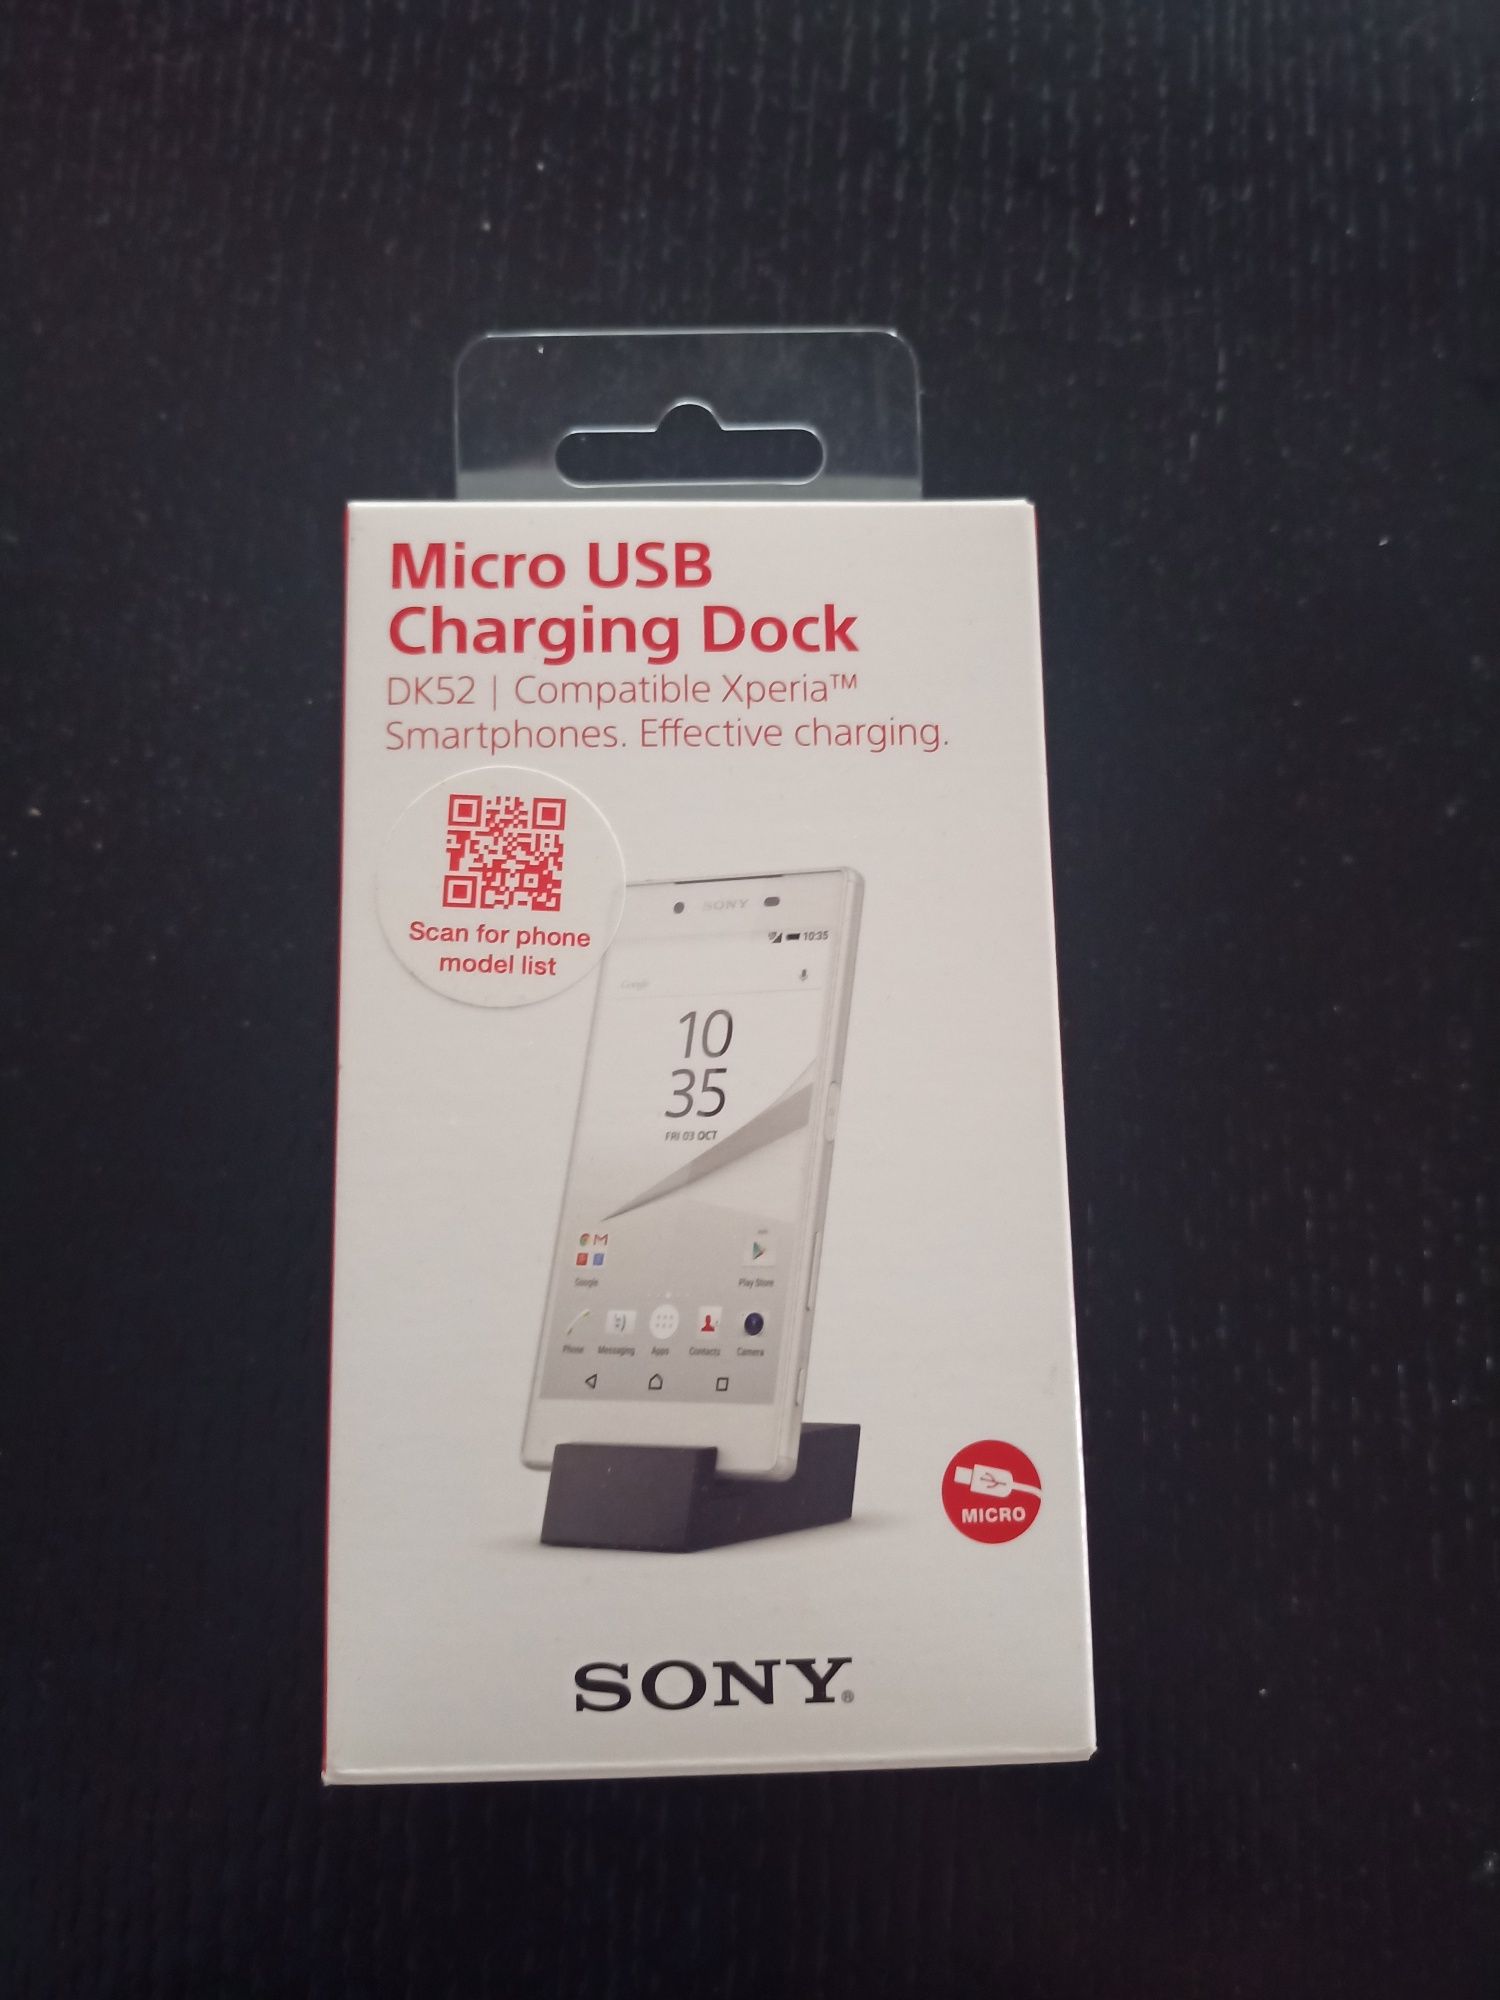 Sony stacja dokująca magnetyczna podstawka ładująca mikro USB DK52